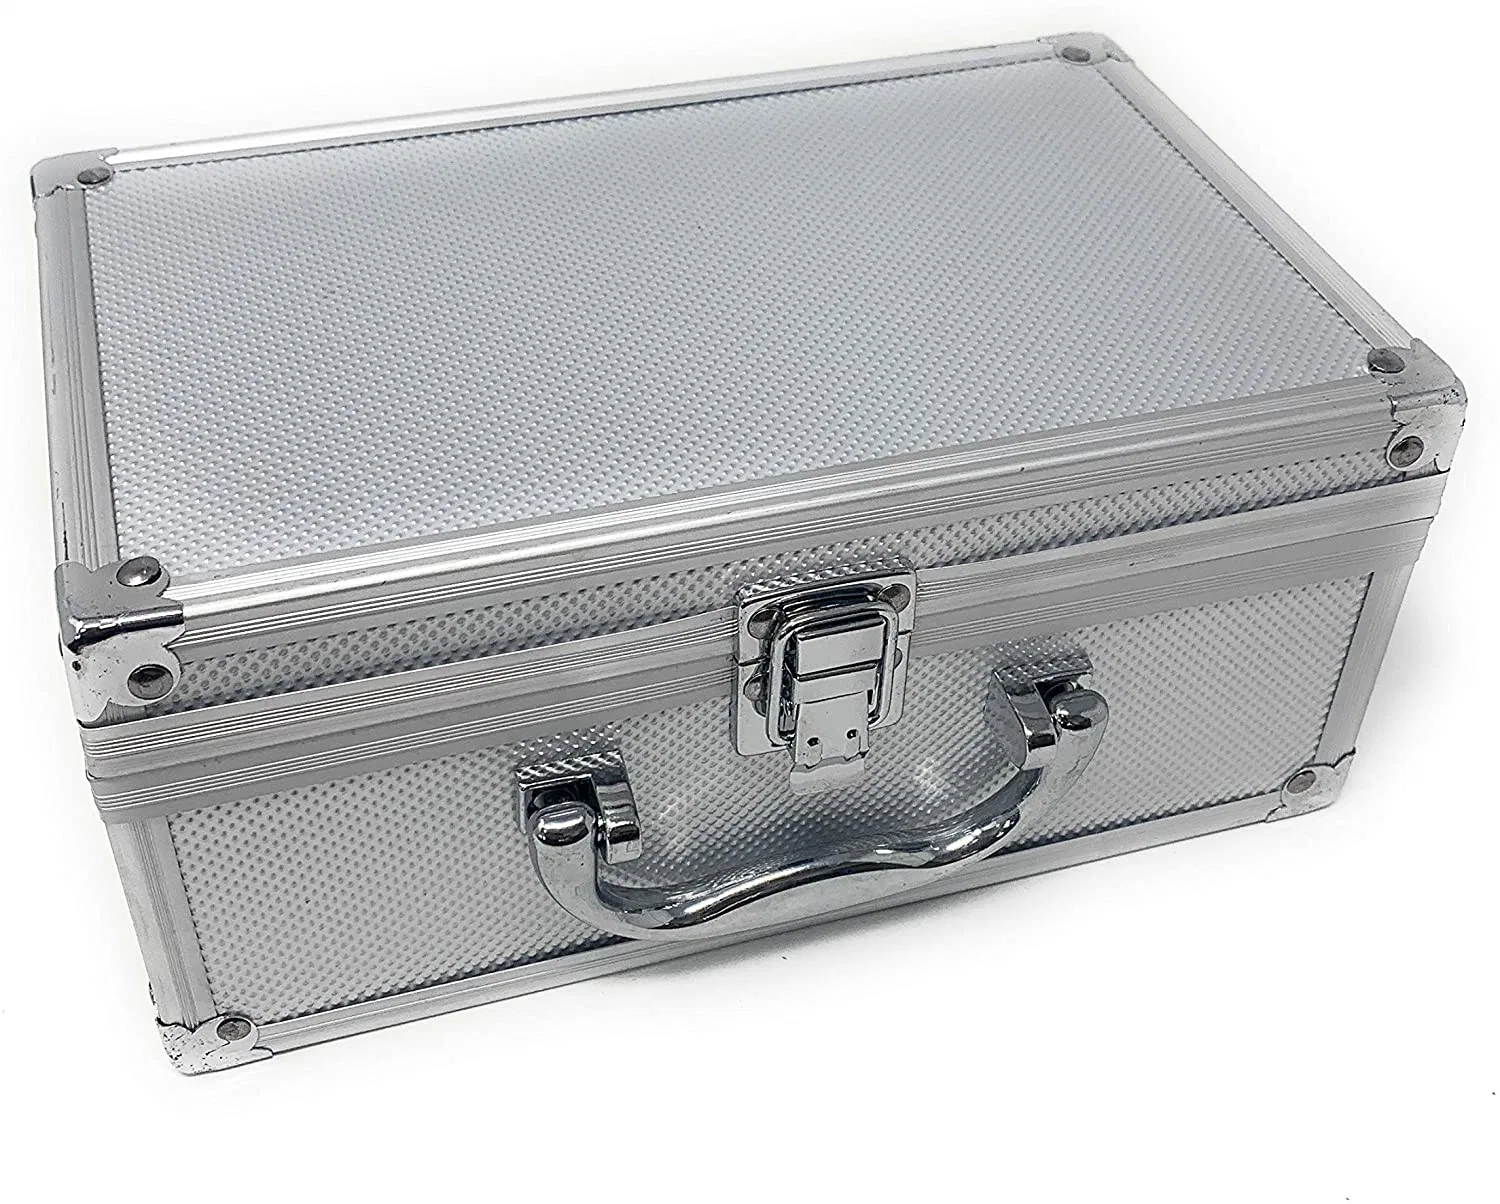 La boîte à outils transportant outil portable côté dur charnières de la sécurité étui rigide en aluminium argenté